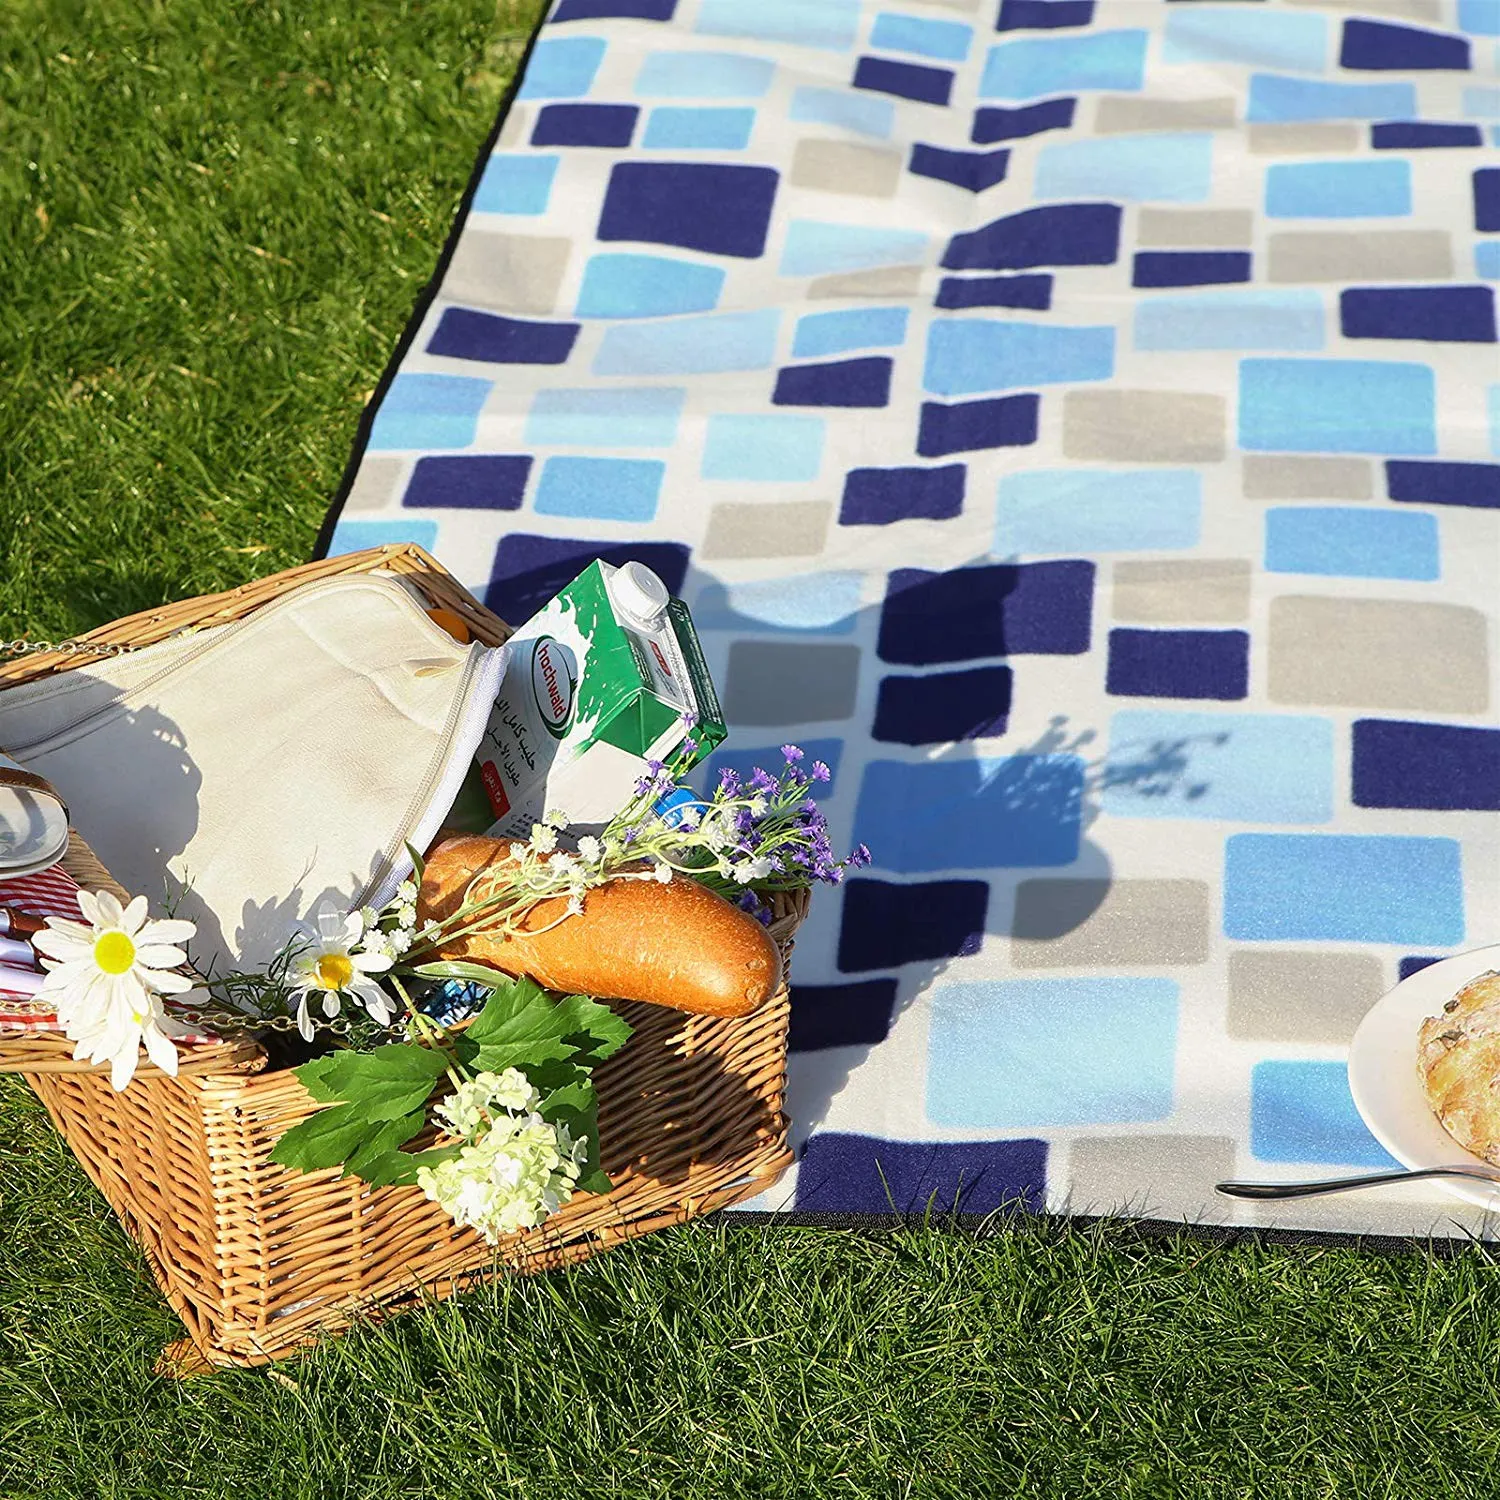 Фланелевое одеяло для пикника, 200x200 см, теплоизолированное, водонепроницаемое, с ручкой для переноски